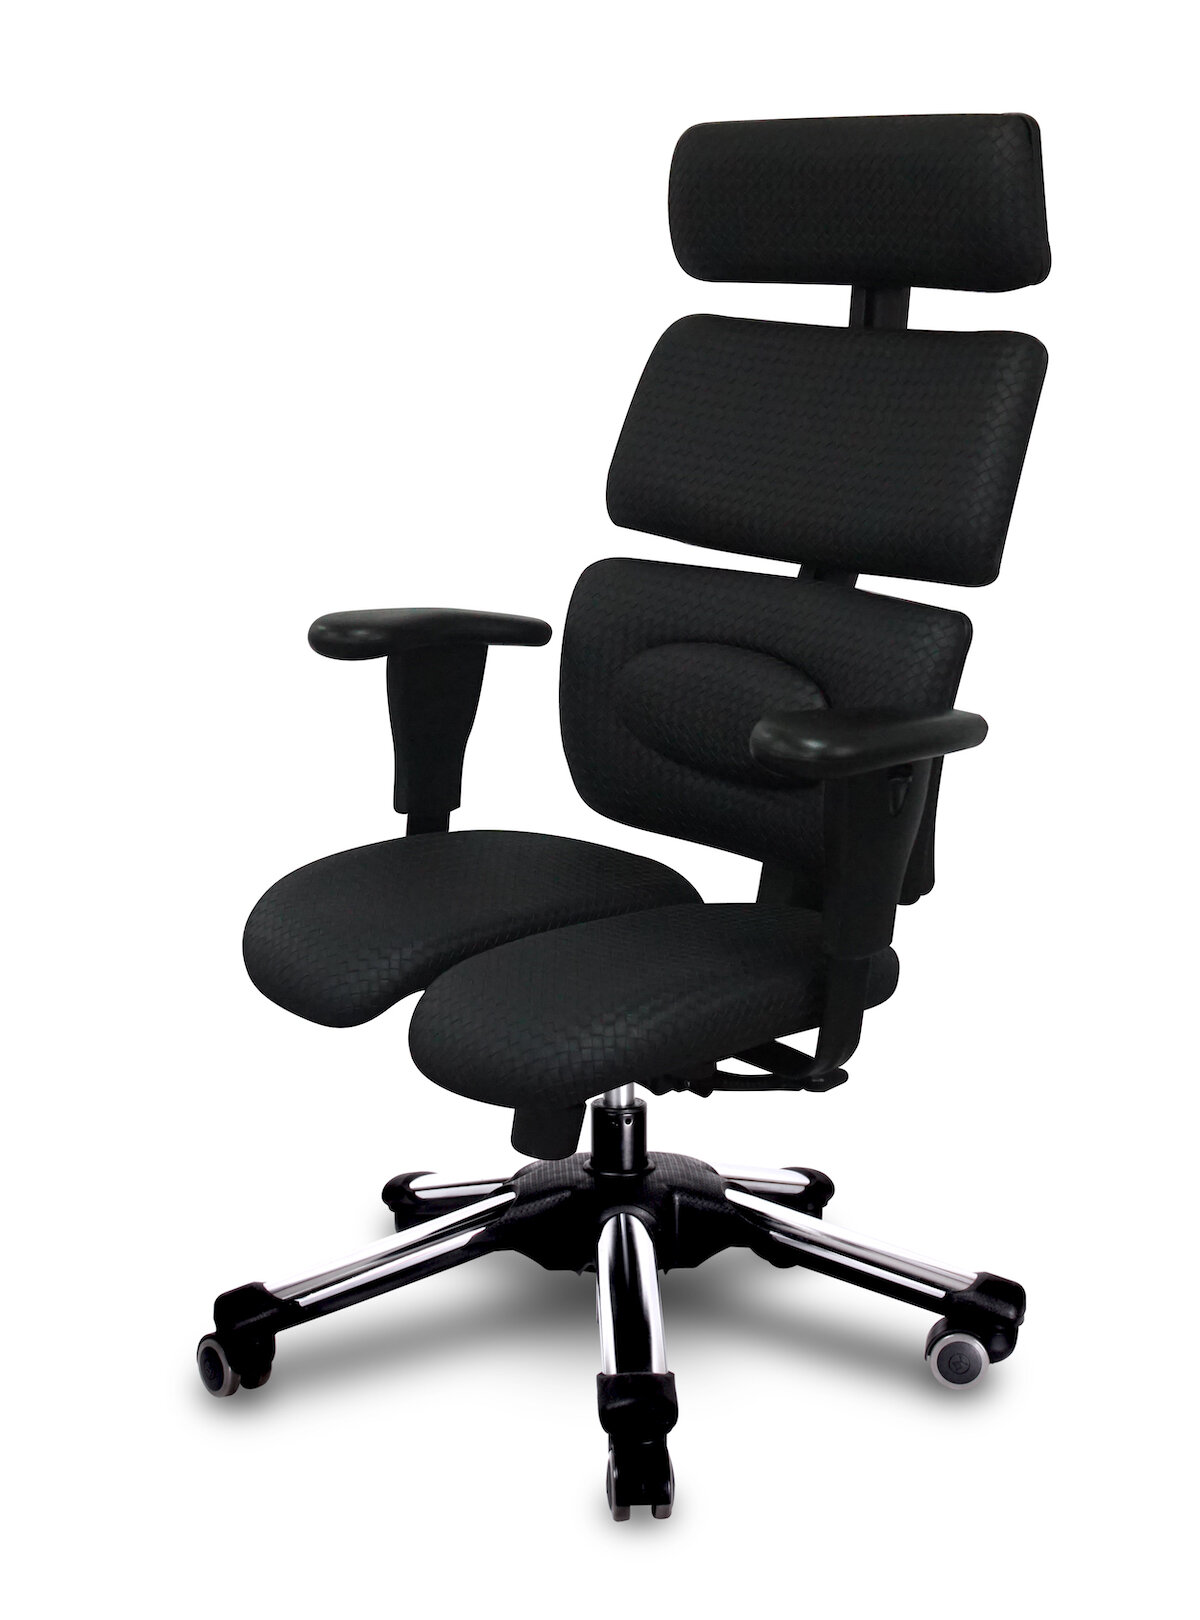 Компьютерное кресло Hara Chair Doctor офисное, обивка: искусственная кожа, цвет: черный